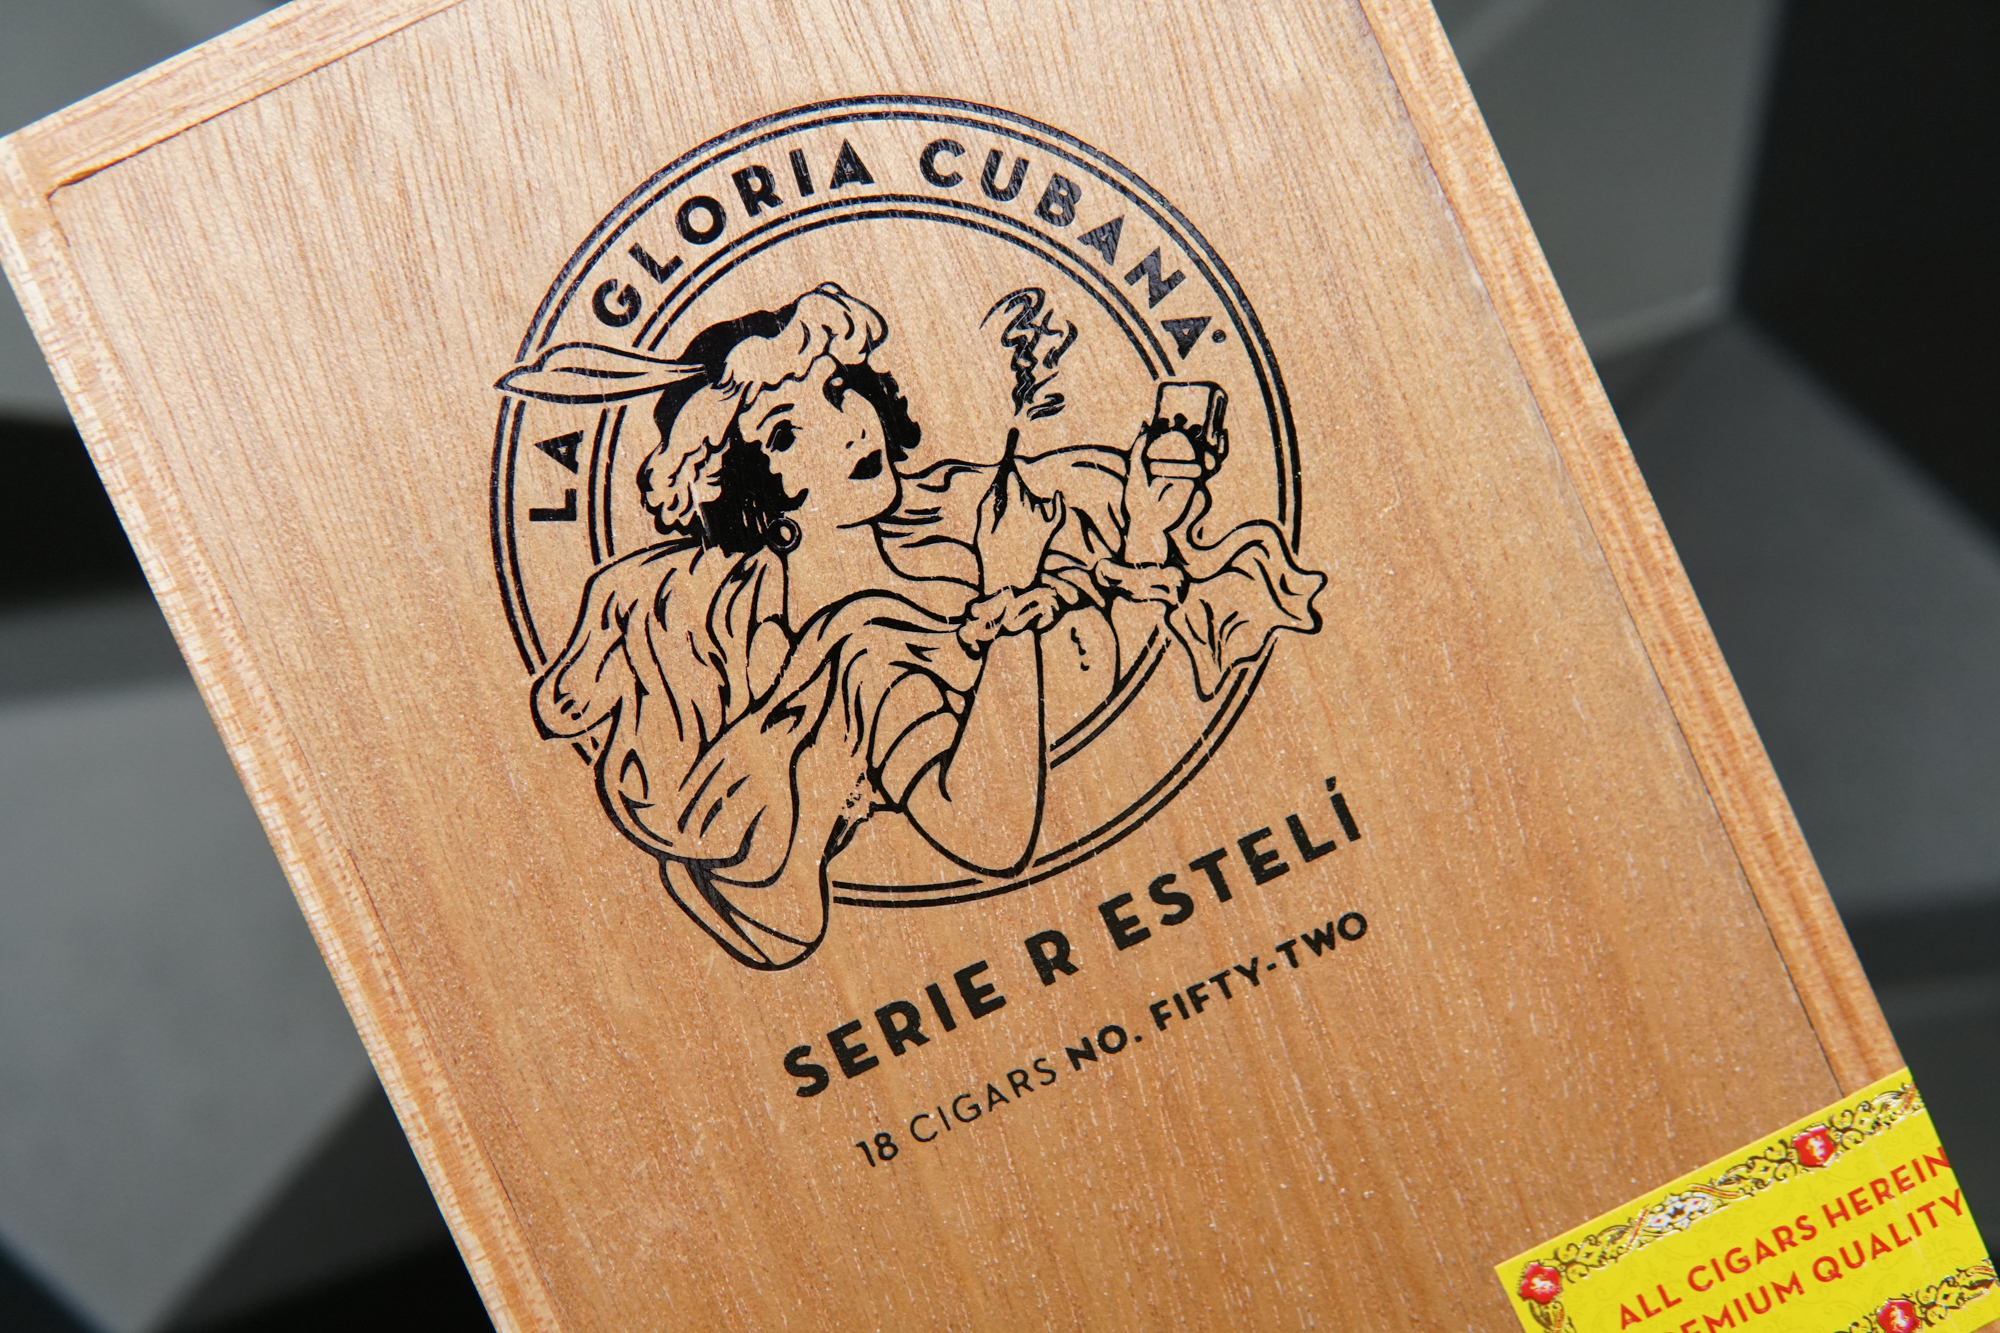 La Gloria Cubana Serie R Esteli Pack Of 18 Cigars